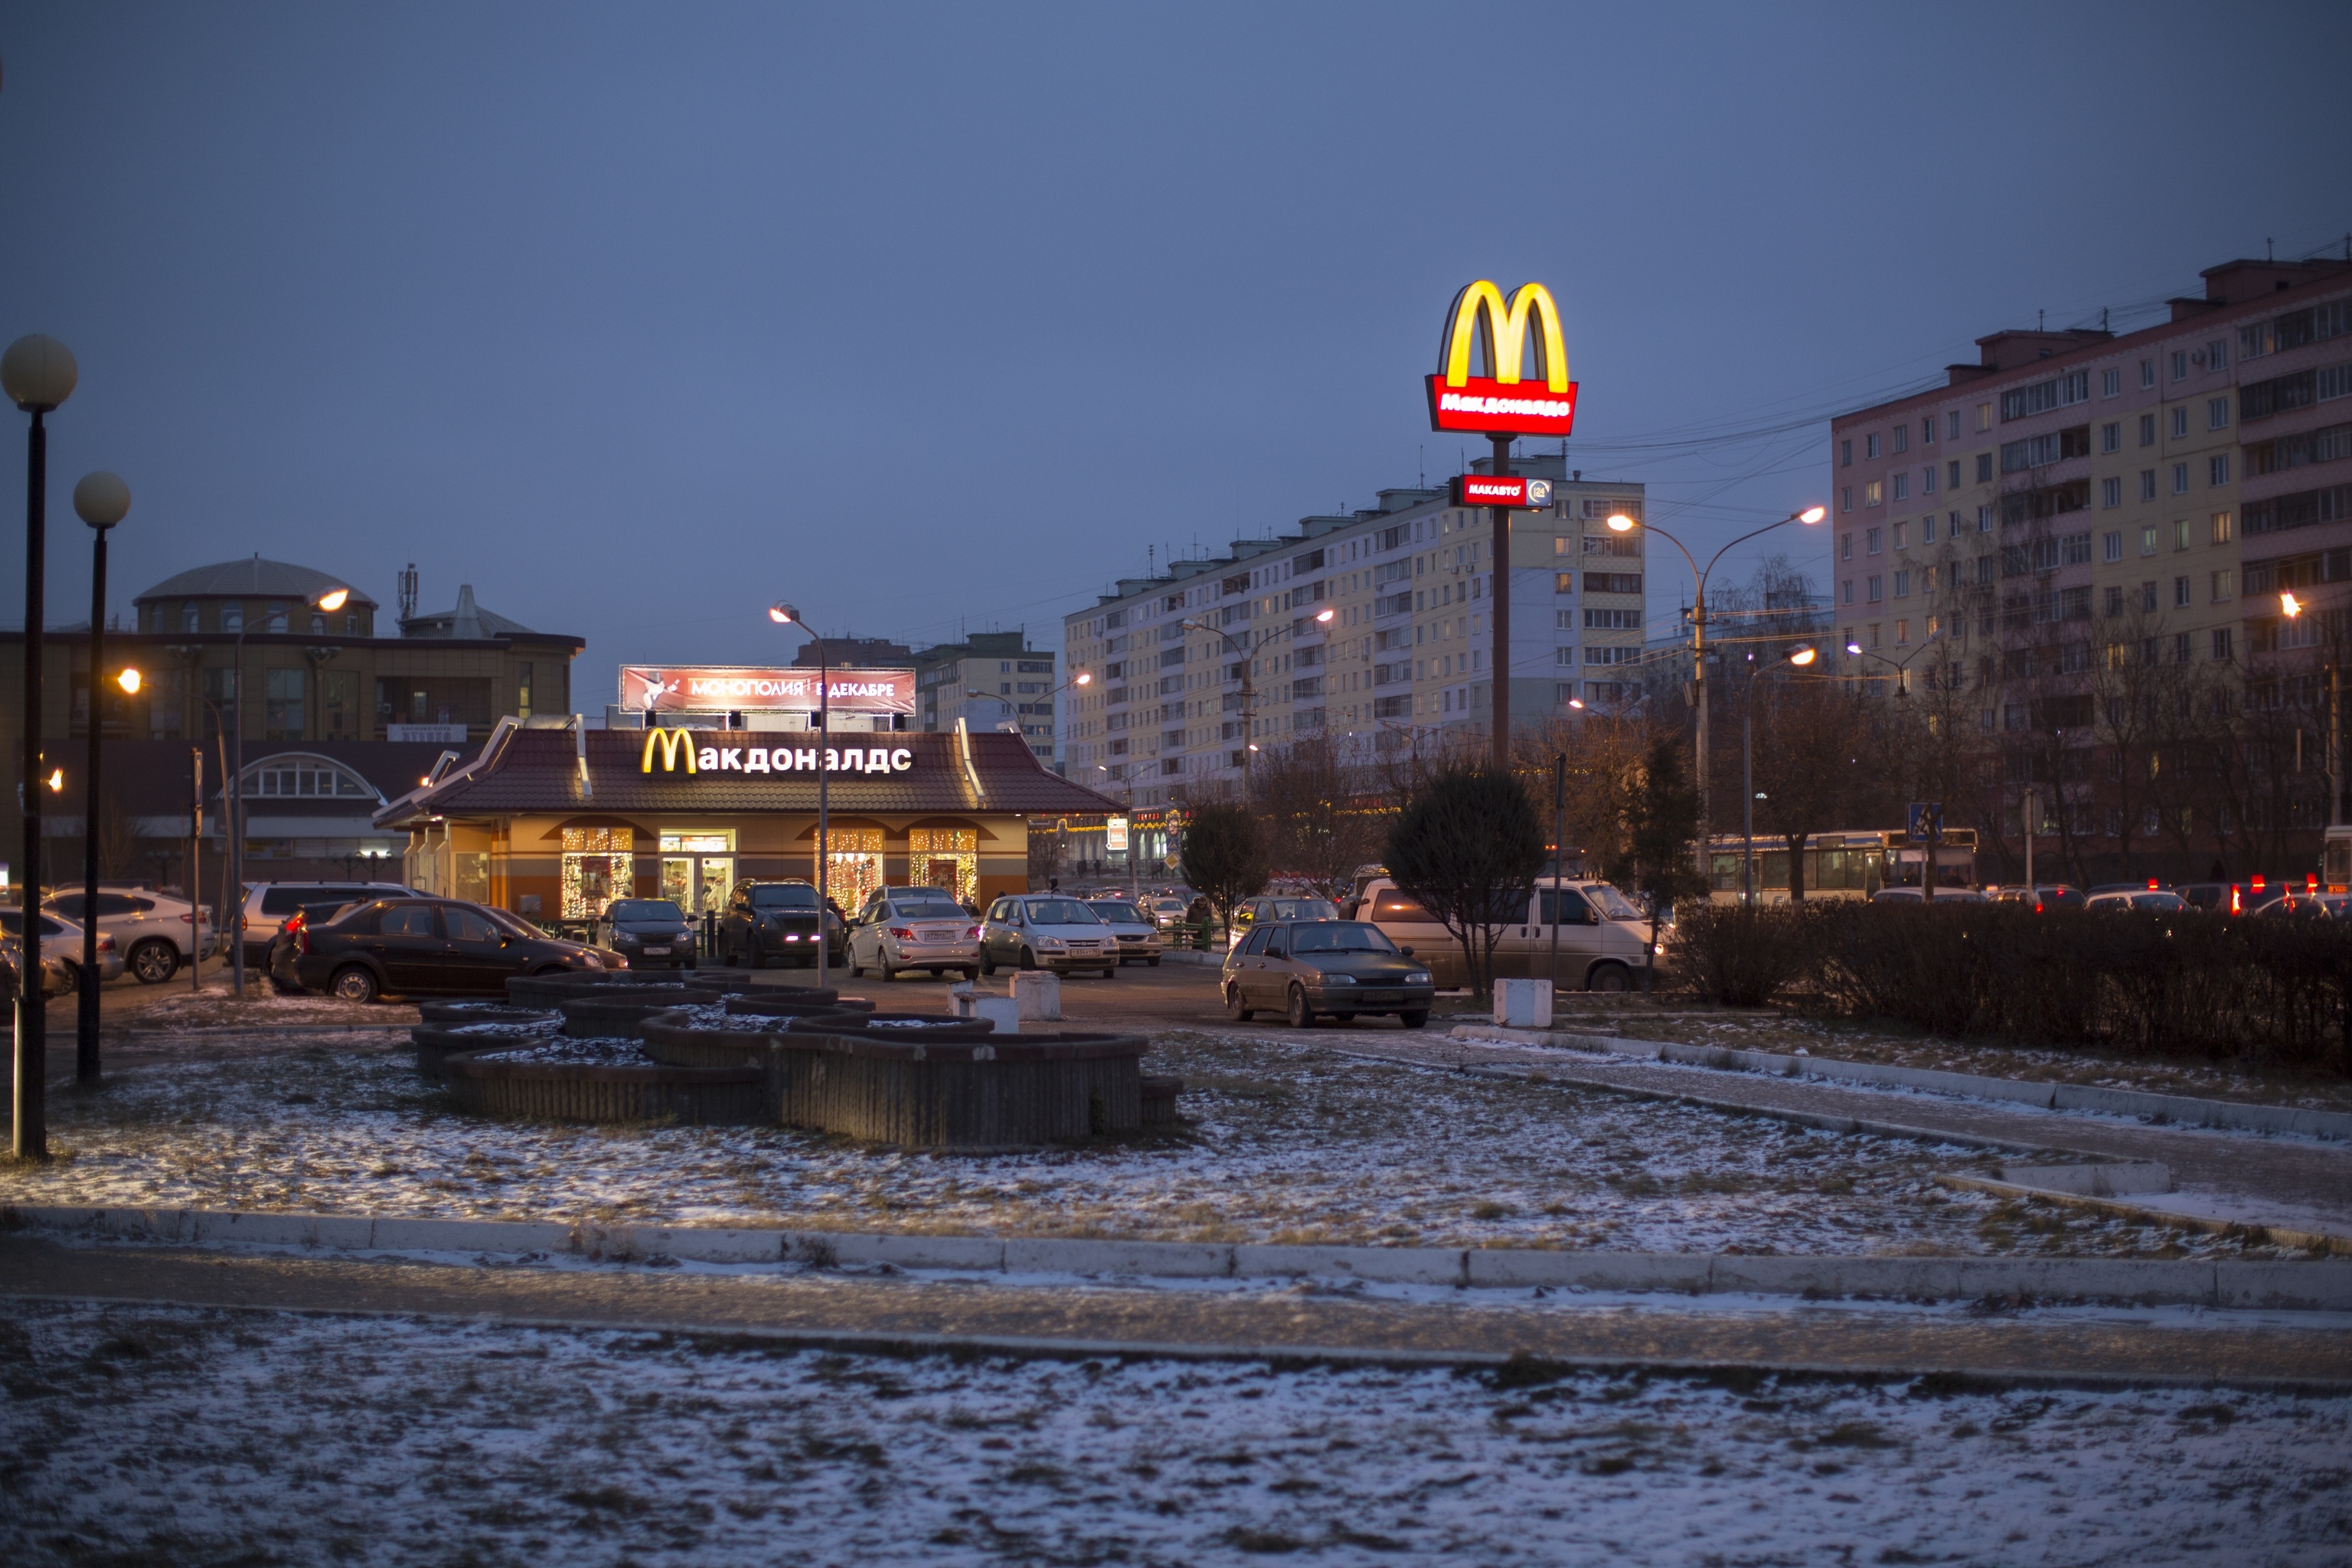 McDonald’s abandona el mercado ruso tras 30 años de actividad por la guerra en Ucrania